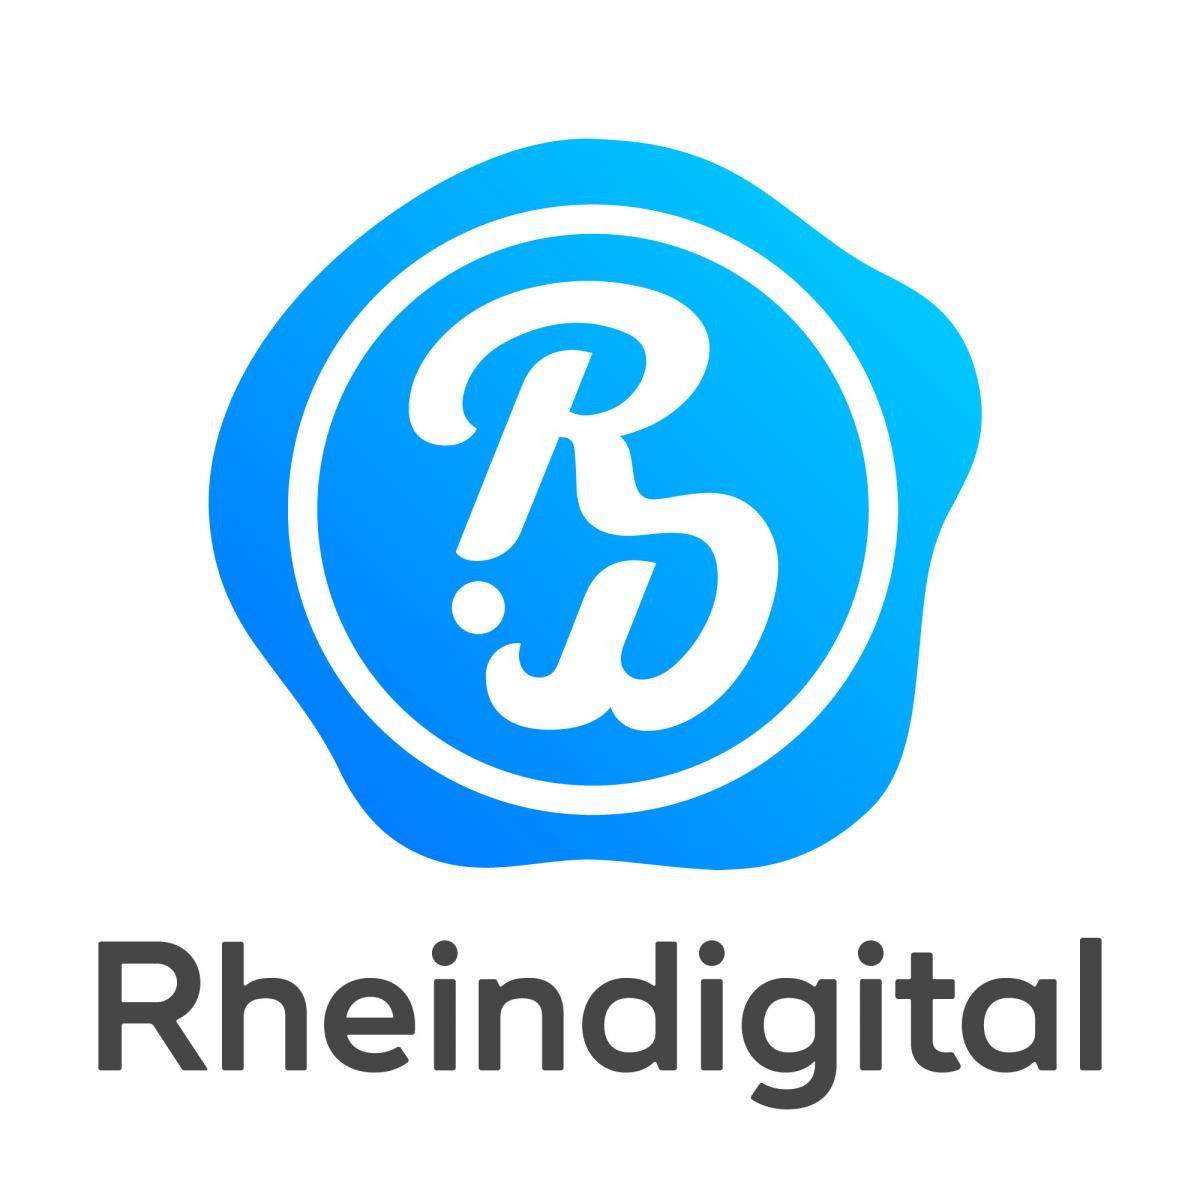 World Para Dance Sport claims Rheindigital partnership has enhanced digital presence